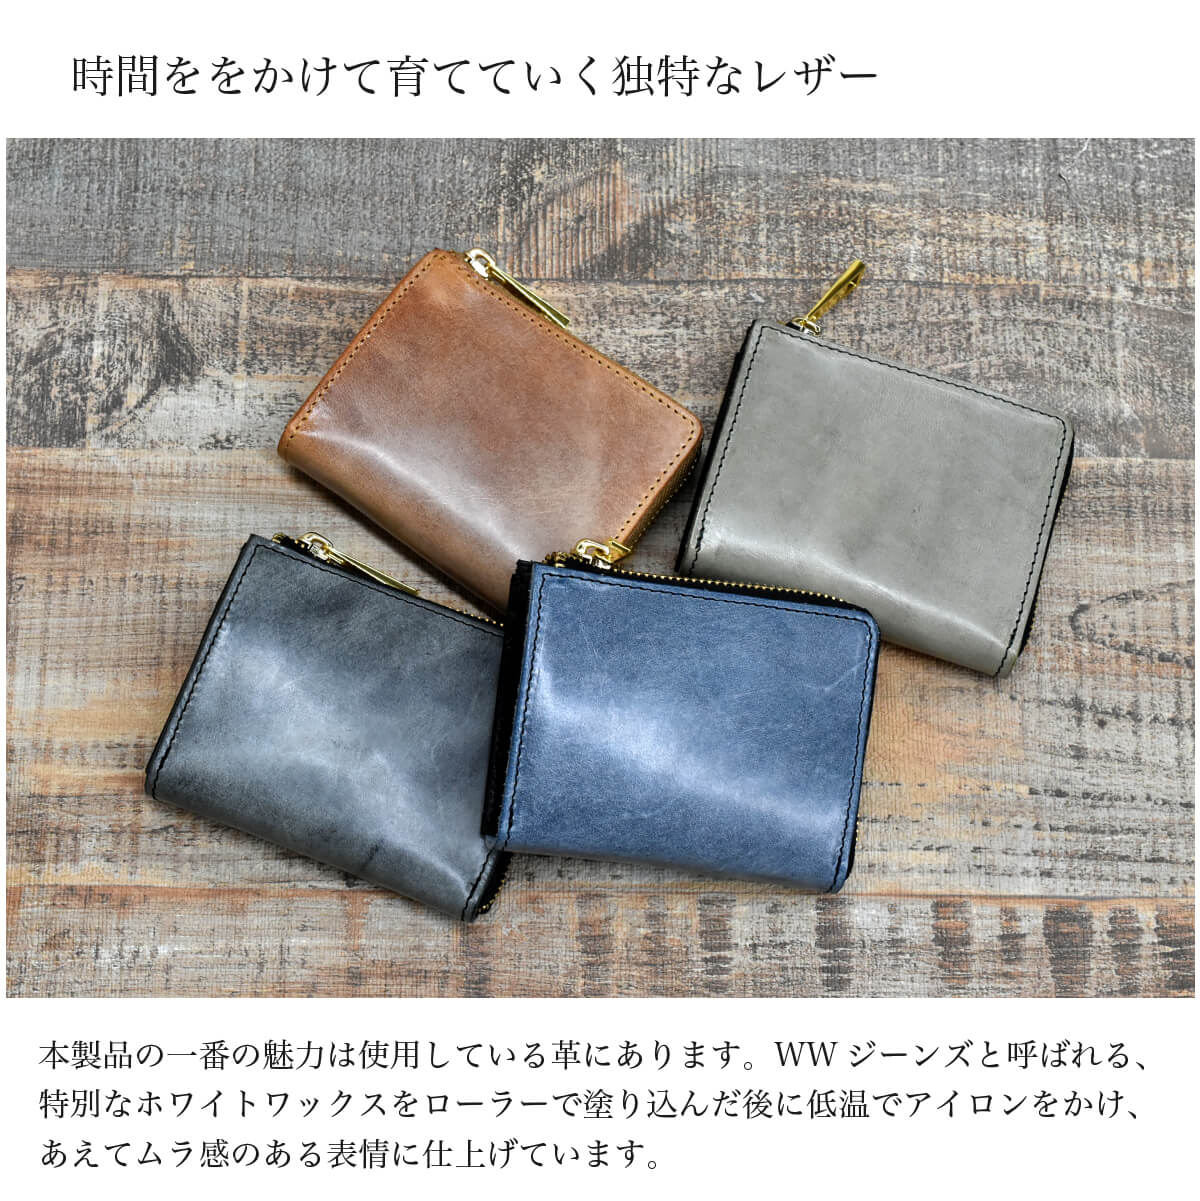 二つ折り財布 メンズ 栃木レザー 財布 日本製 ホワイトワックス TIDY